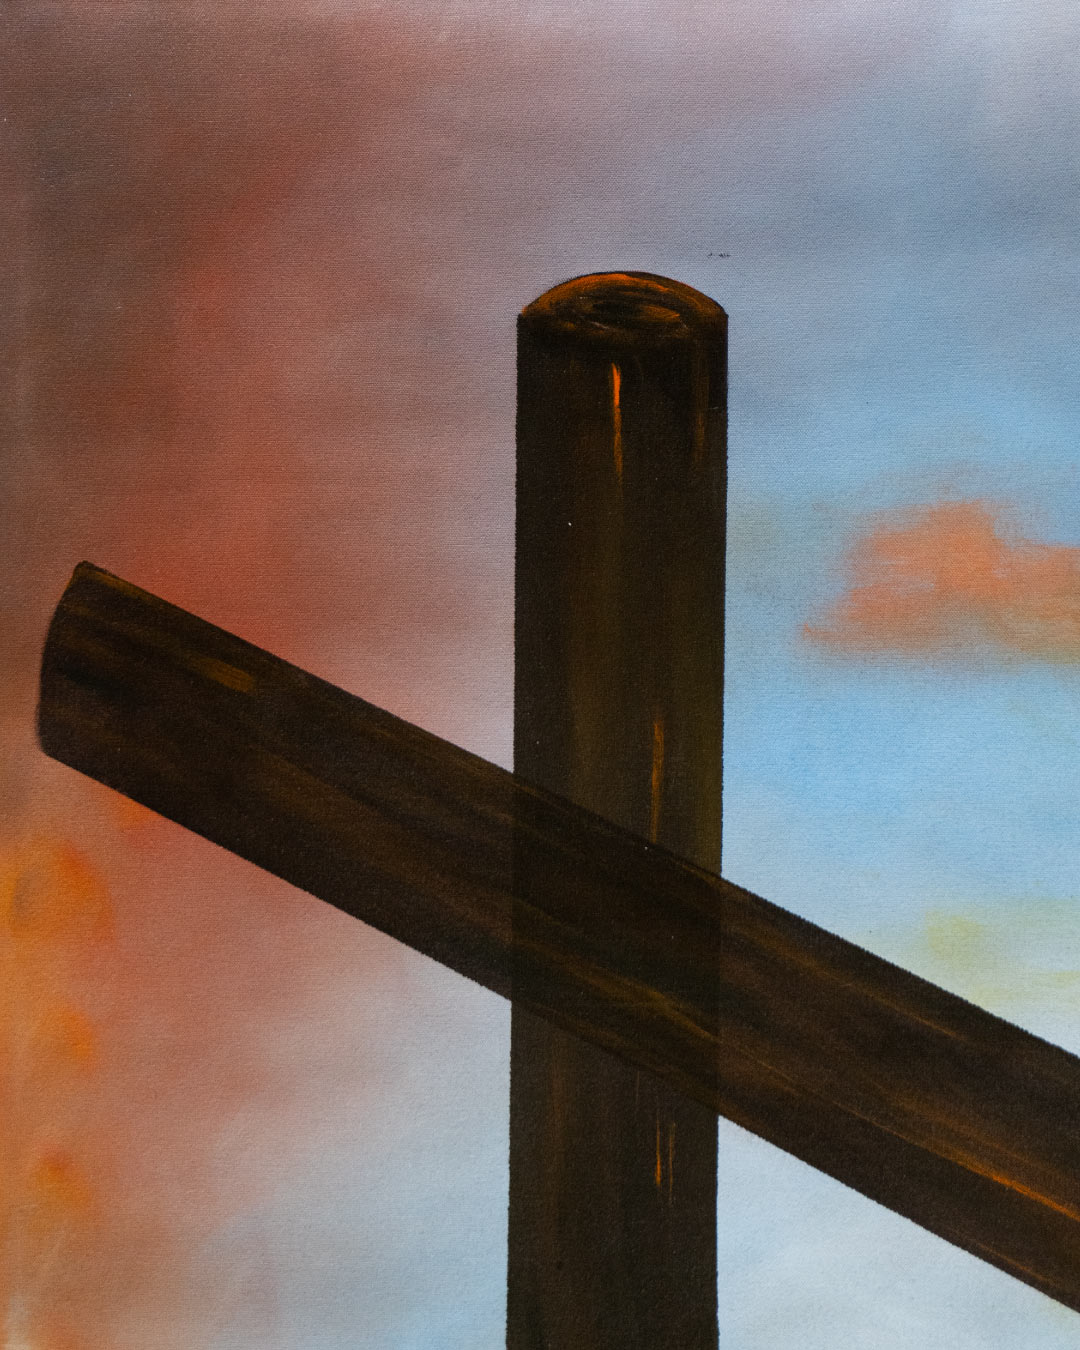 The Cross / Juan Carlos Jaramillo